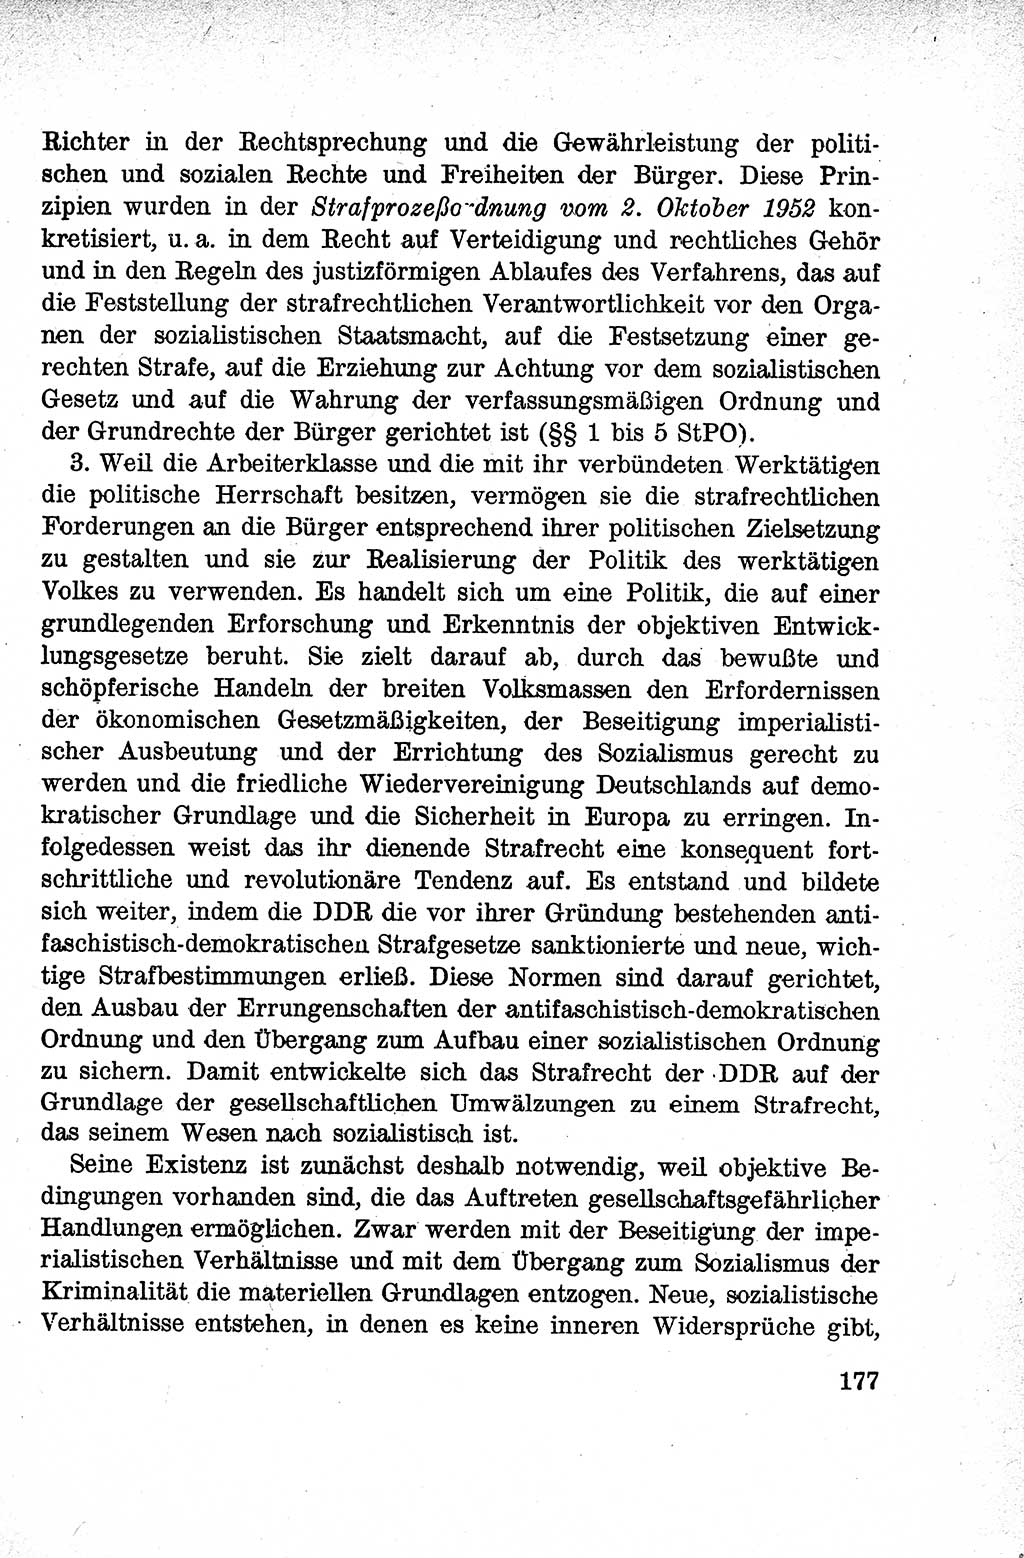 Lehrbuch des Strafrechts der Deutschen Demokratischen Republik (DDR), Allgemeiner Teil 1959, Seite 177 (Lb. Strafr. DDR AT 1959, S. 177)